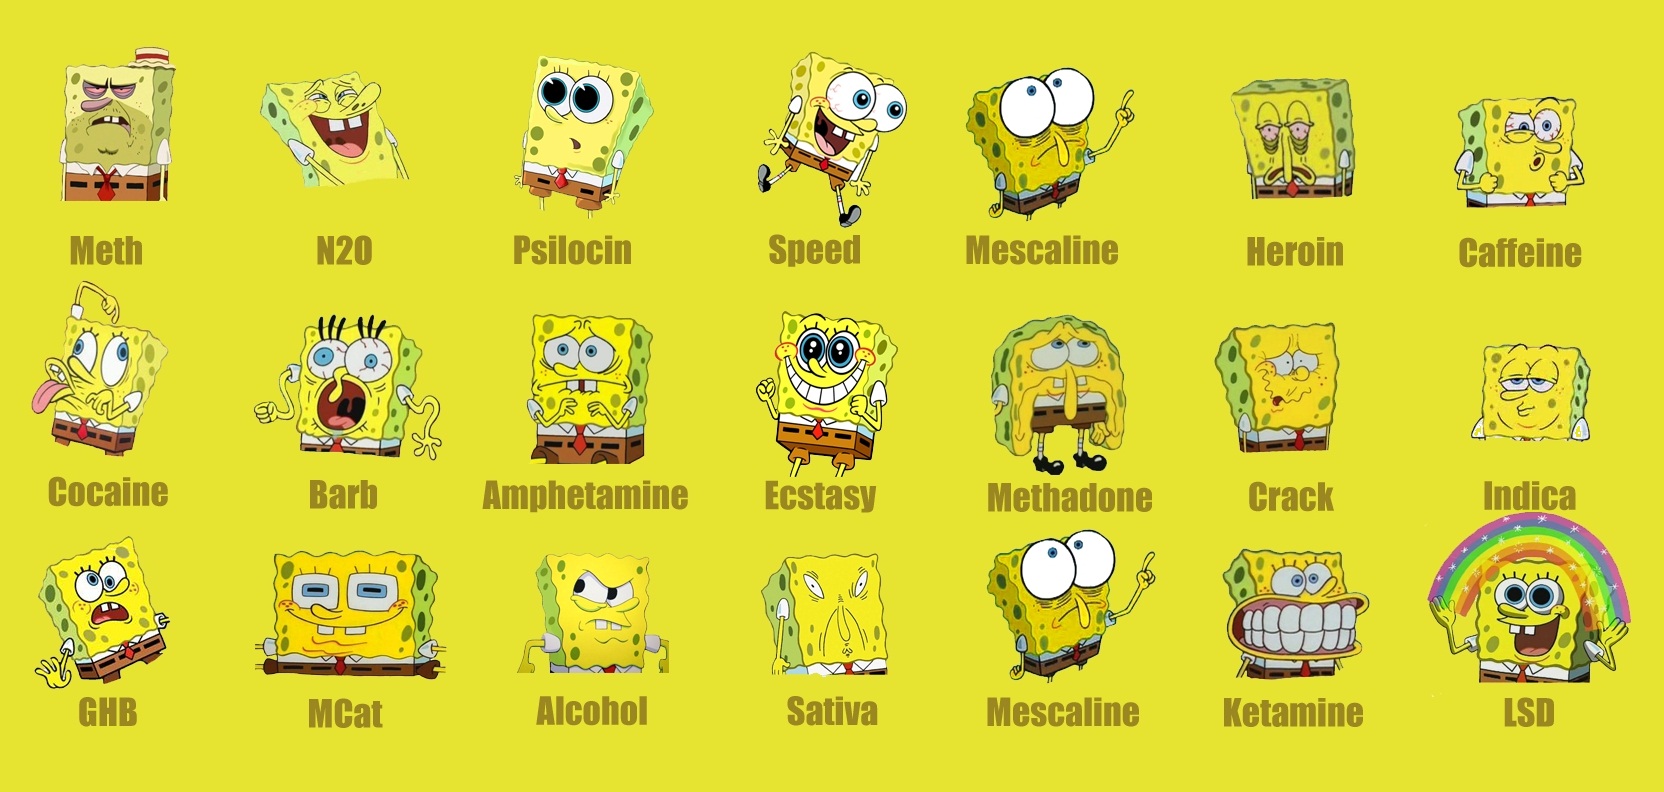 Drugs Spongebob Squarepants Q8jw